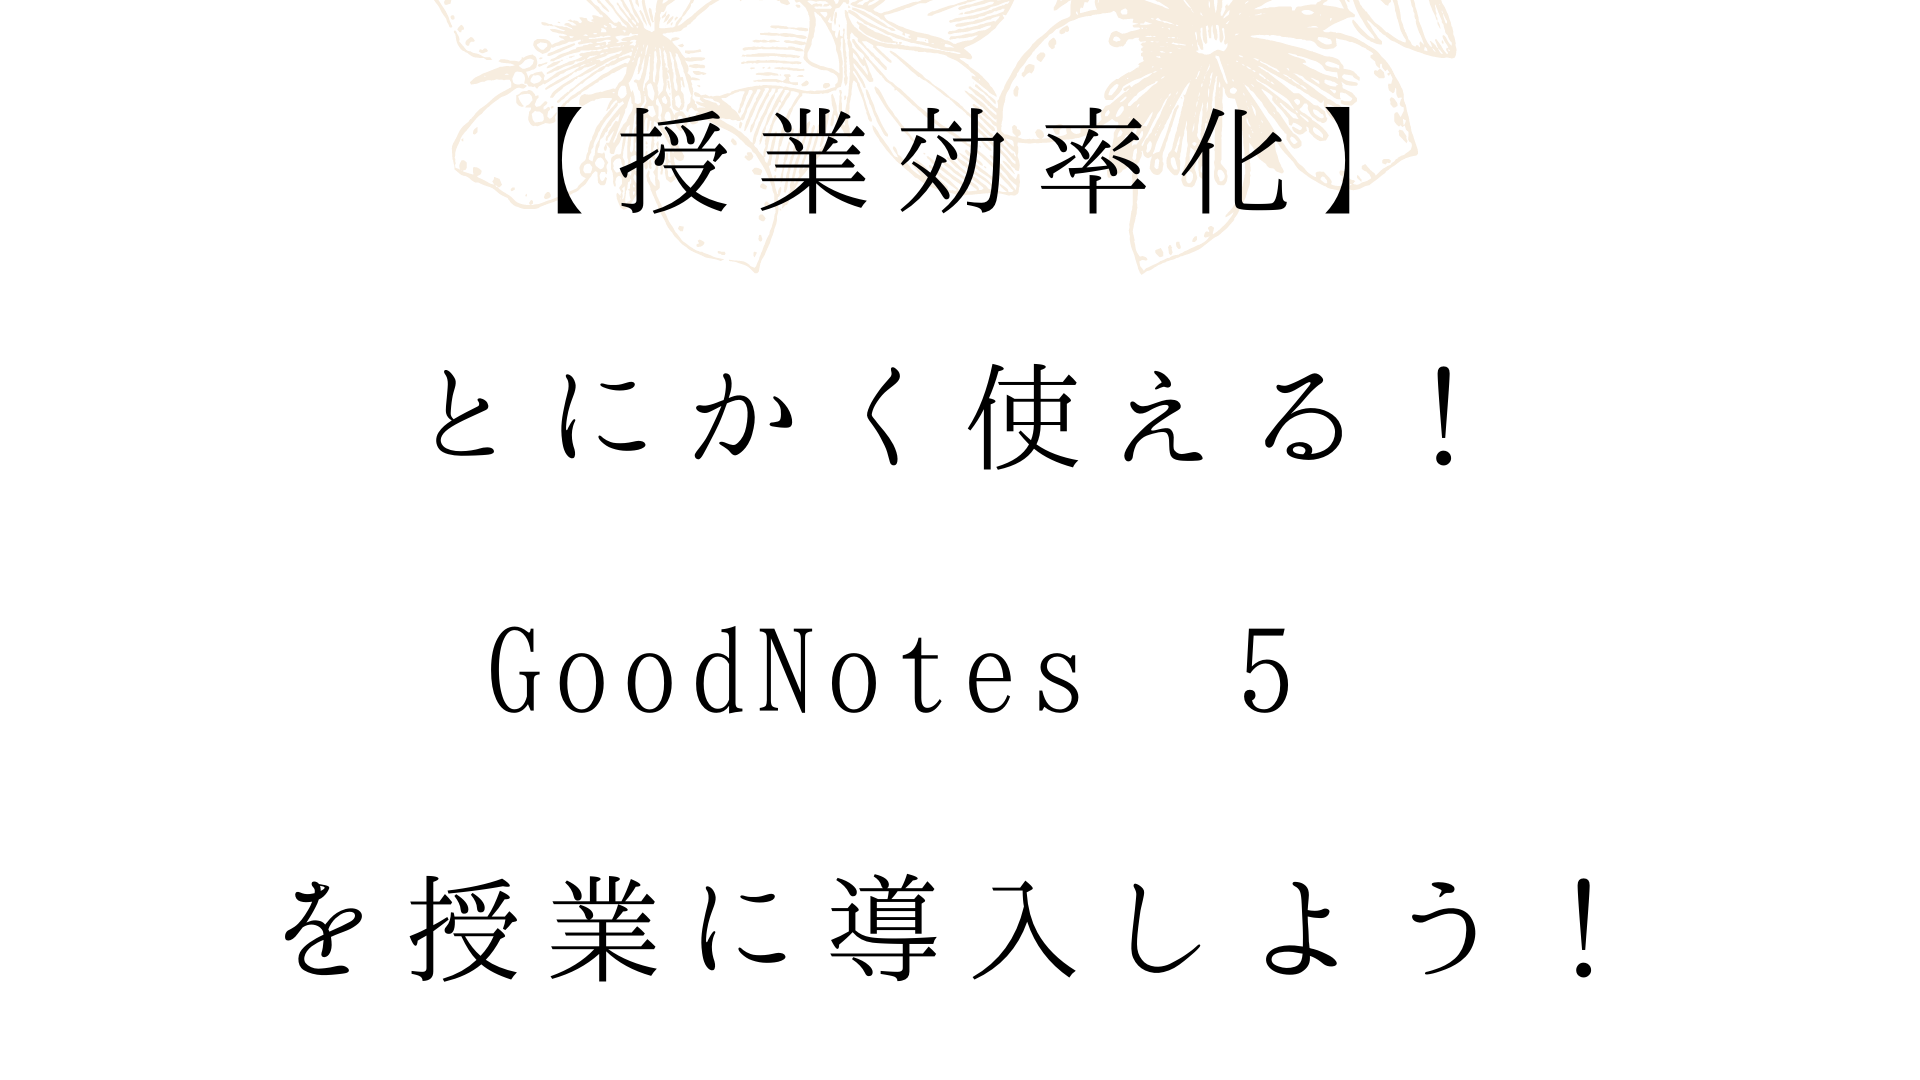 授業効率化 とにかく使える Goodnotes 5を授業に導入しよう オンライン日本語教師の教科書